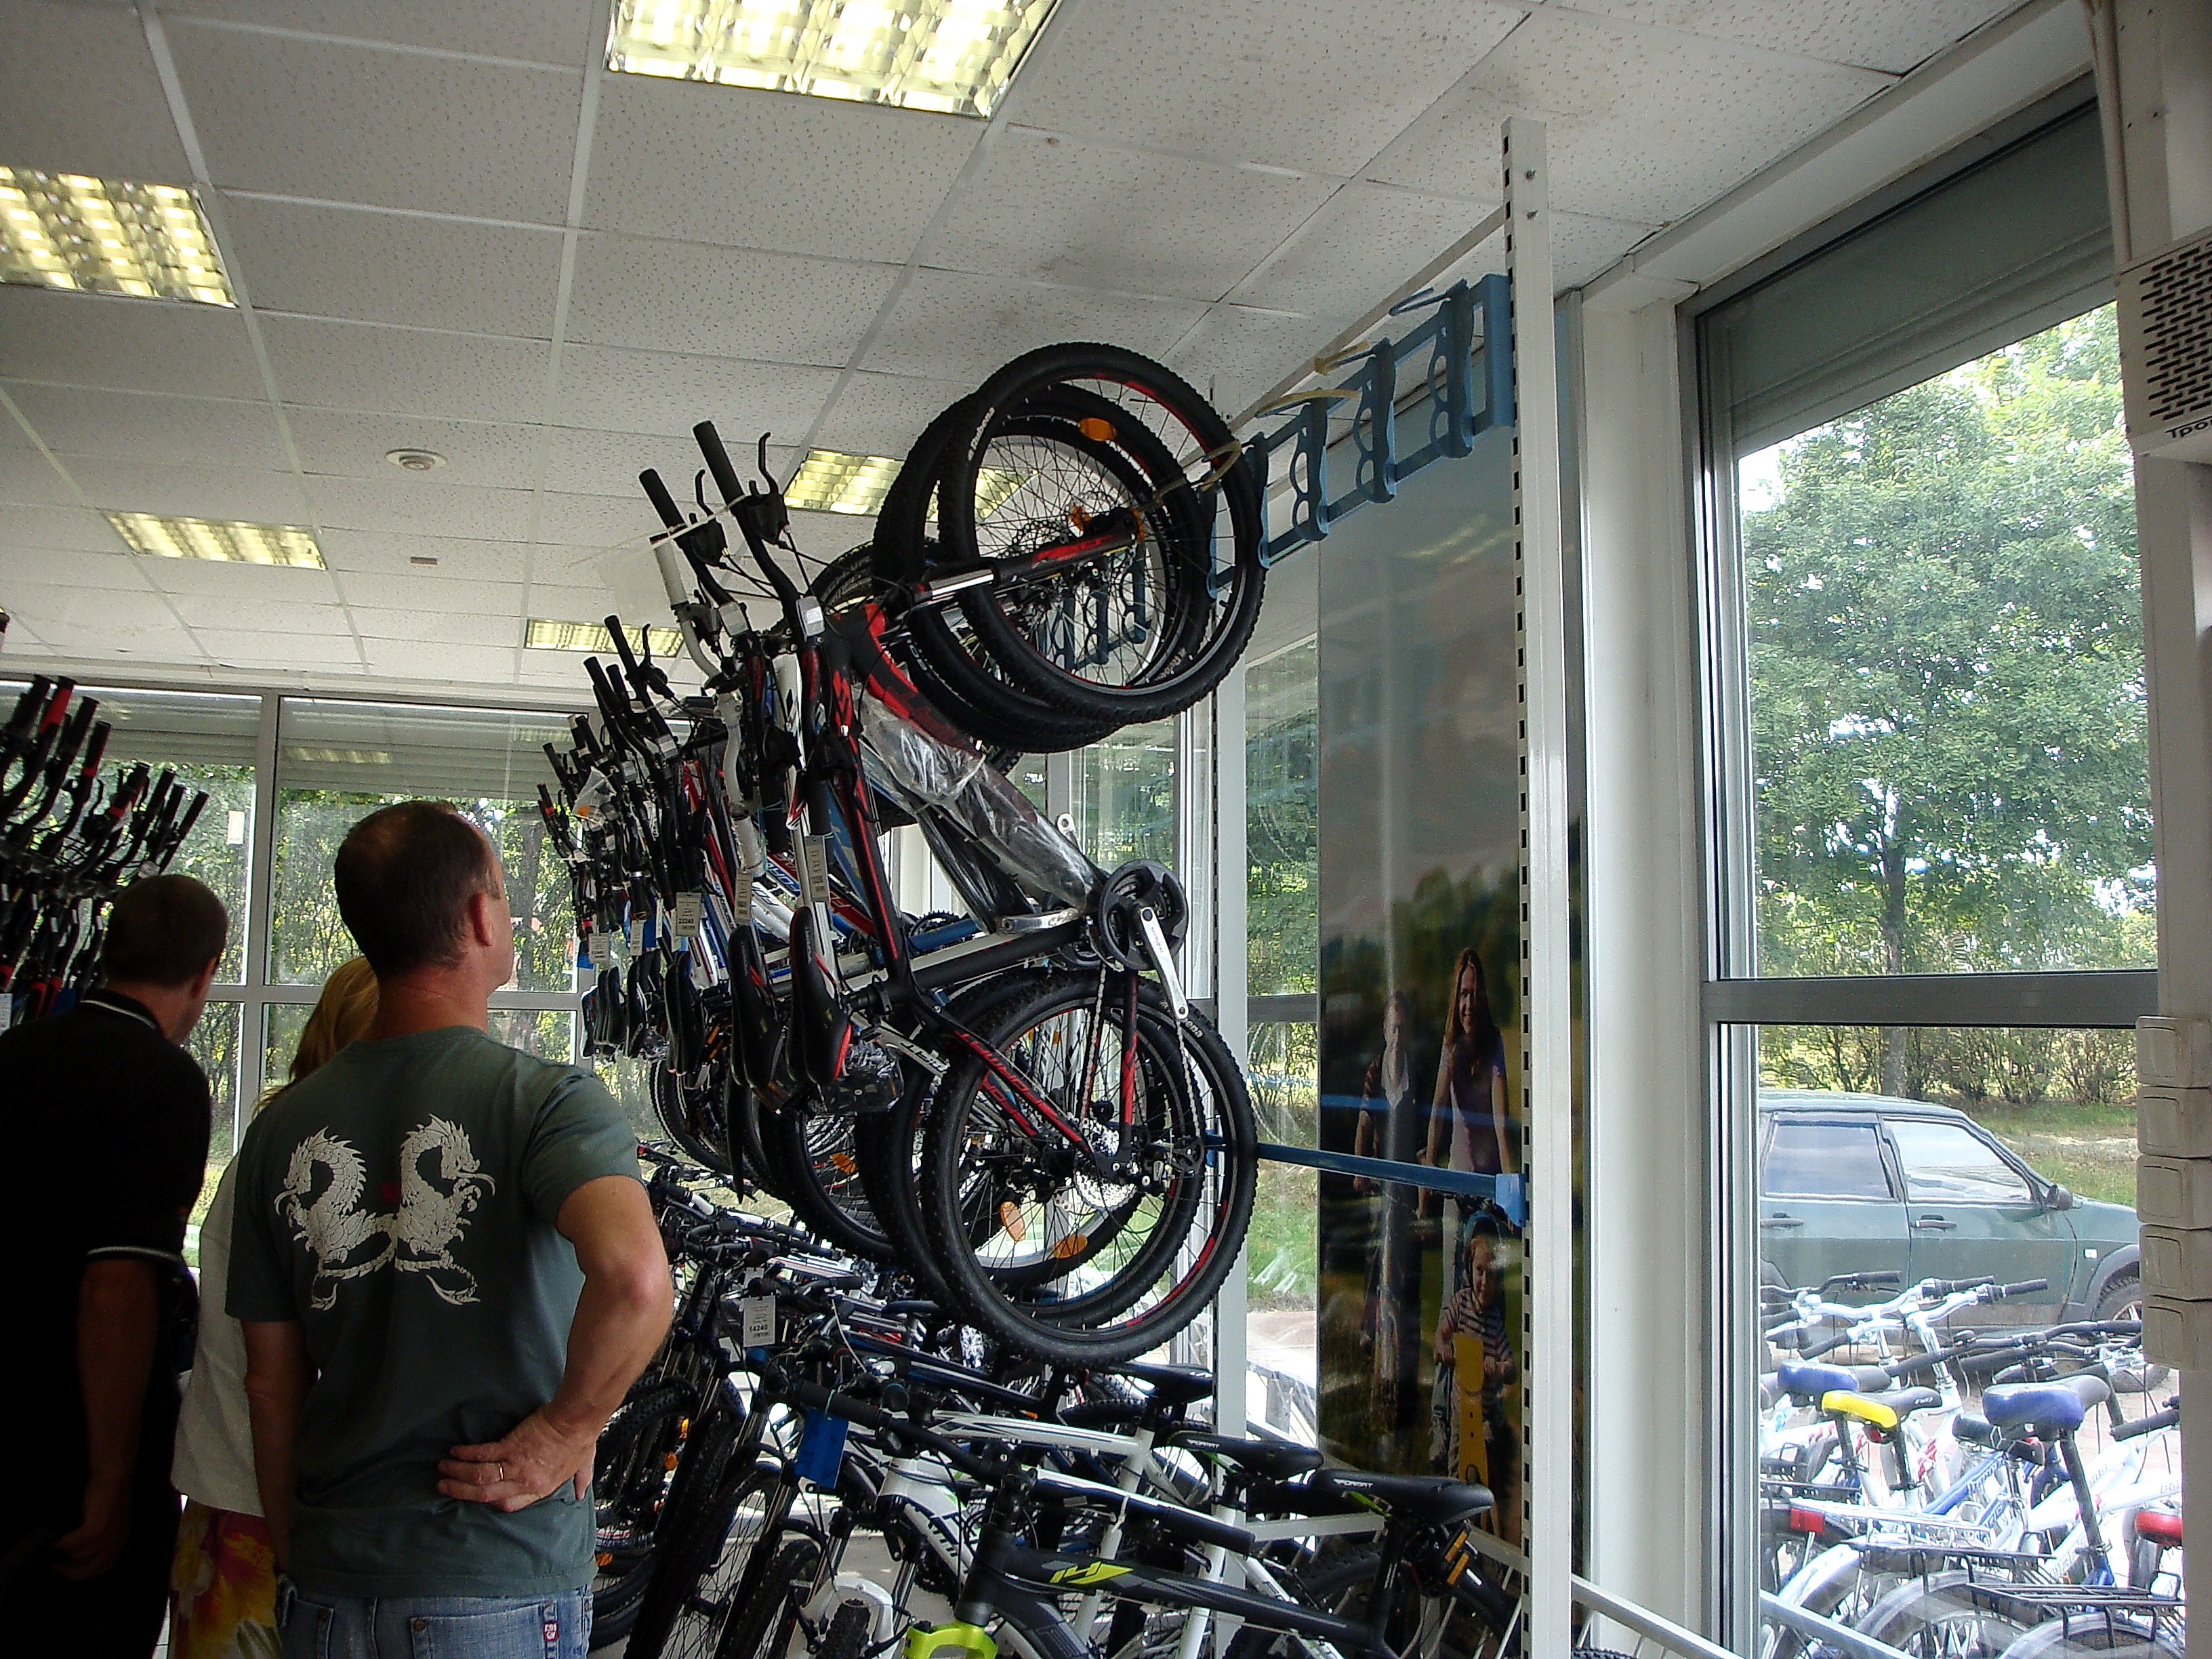 Веломарка Магазин Велосипедов Спб Каталог И Цены